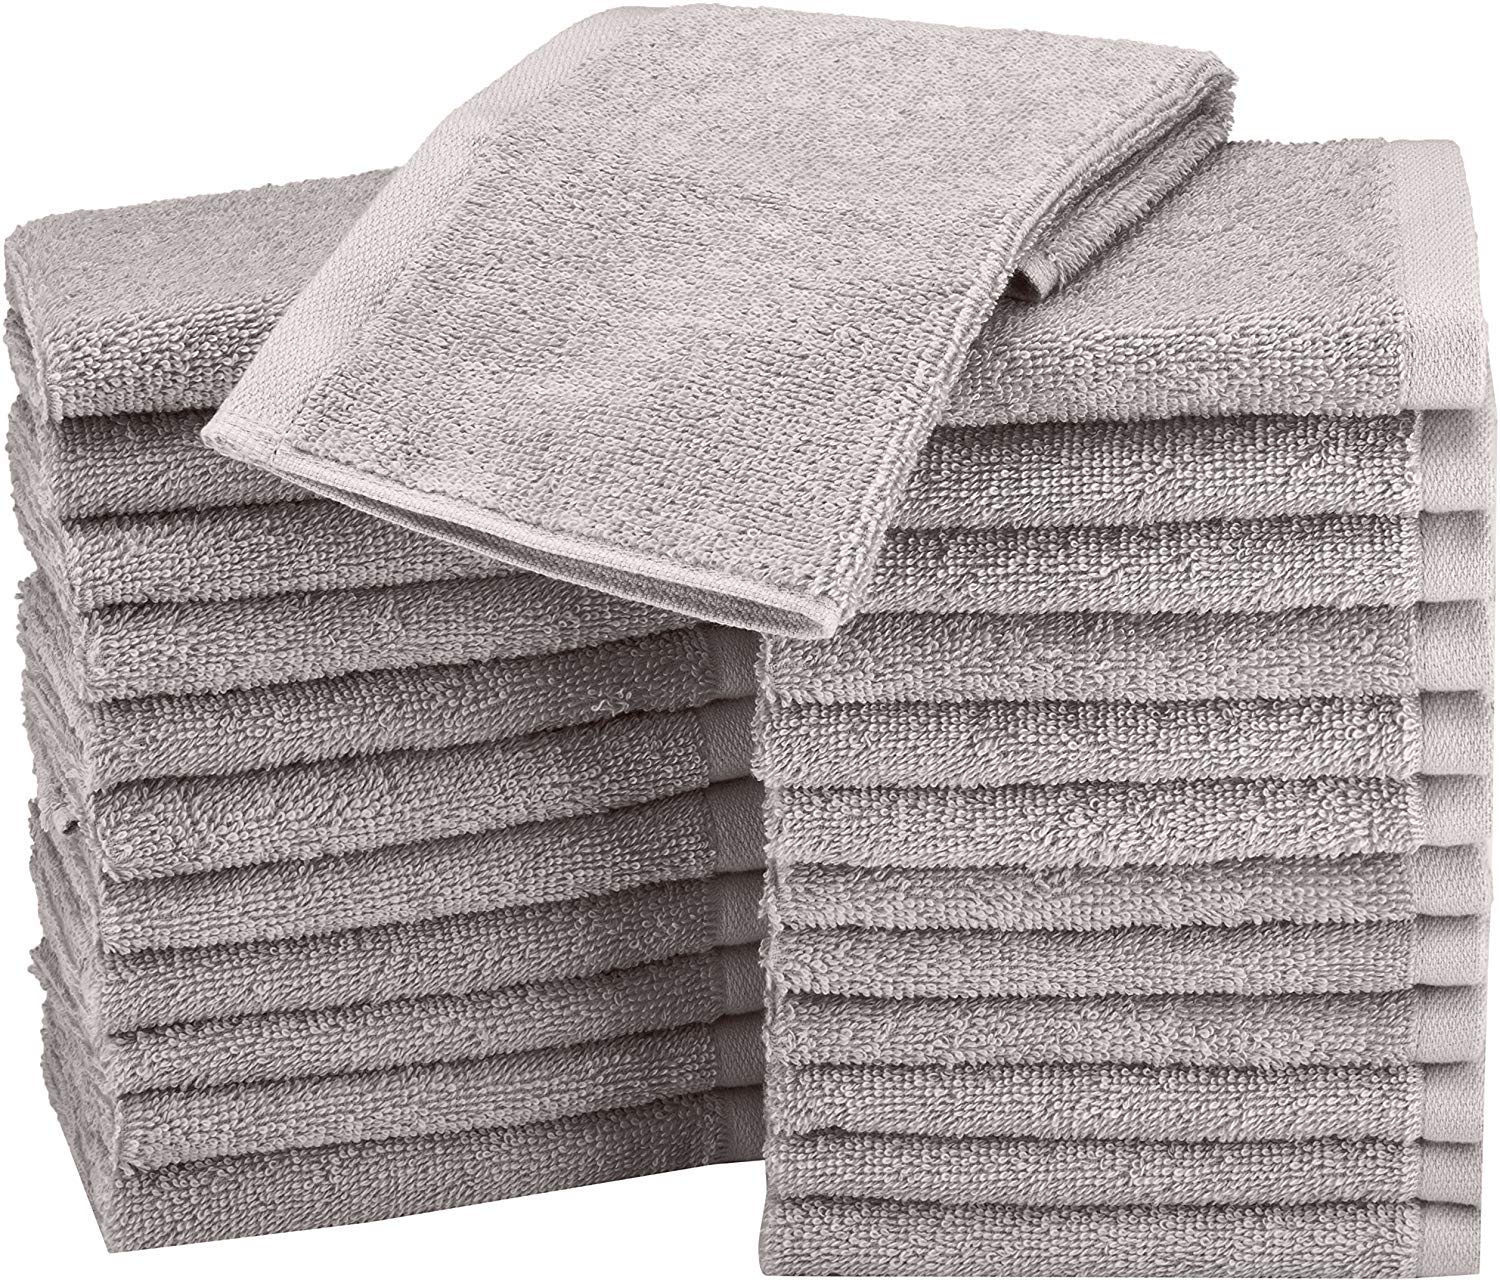 Promotions Amazon Basics Lot de 24 petites serviettes en coton 30 x 30 cm Gris SURVaRc7f en ligne